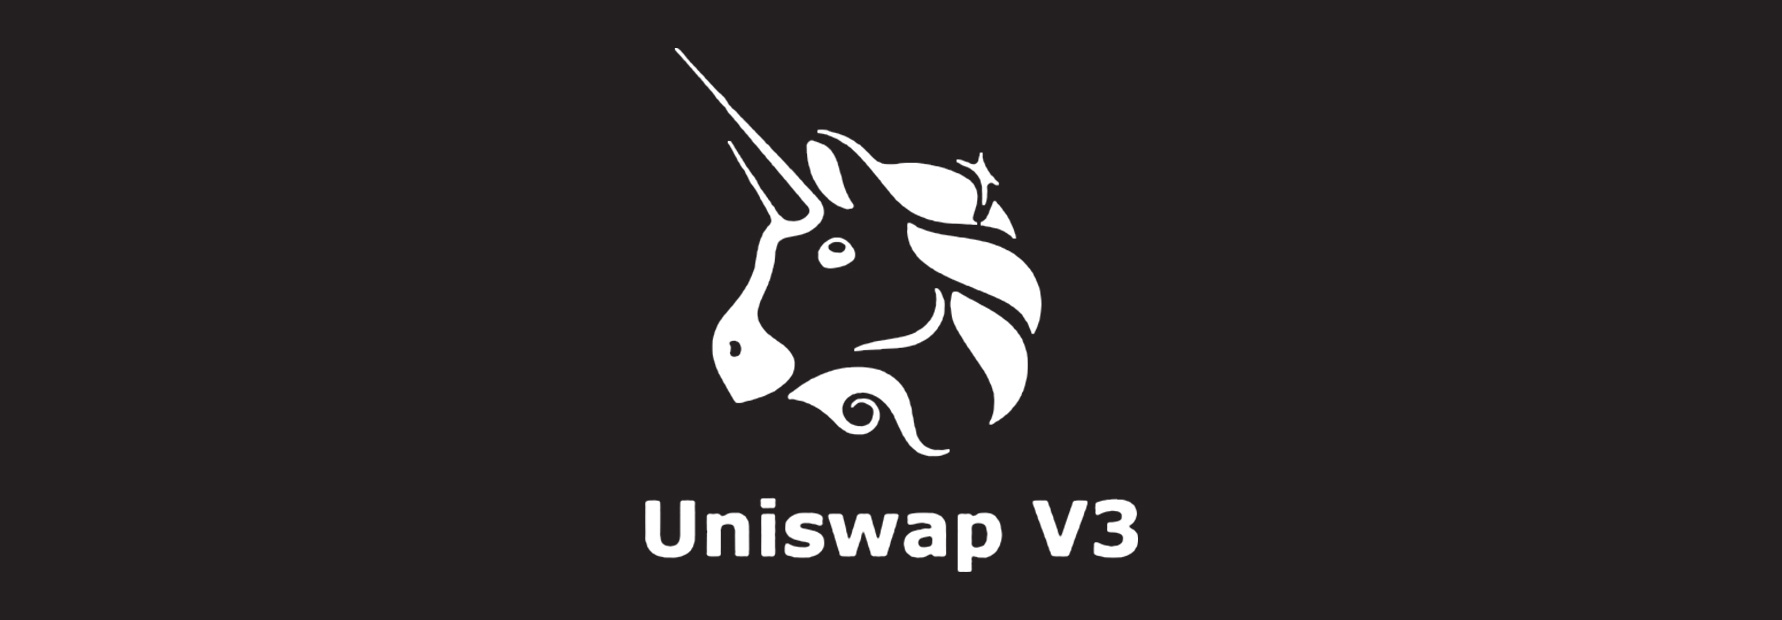 uniswap_v3-logo.jpg